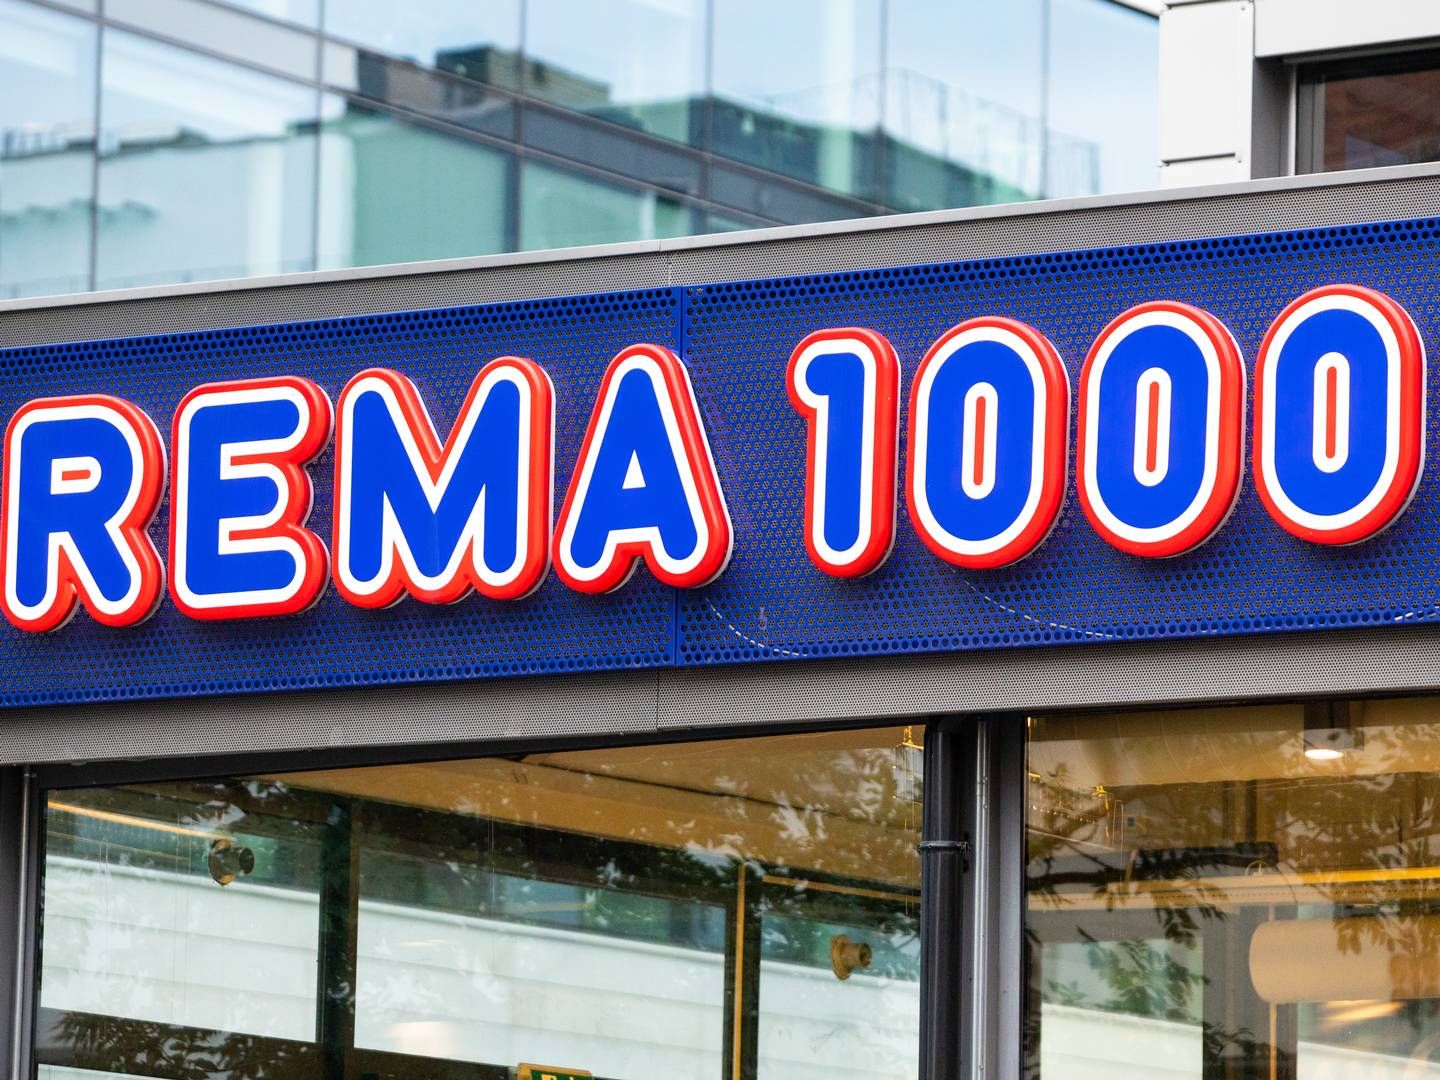 Totalt har Rema 1000 overtatt 113 tidligere Aldi-butikker, men Rema 1000 har siden solgt ti butikker videre til Lidl, fem til Dagrofa og tre til Coop. | Foto: Audun Braastad / NTB